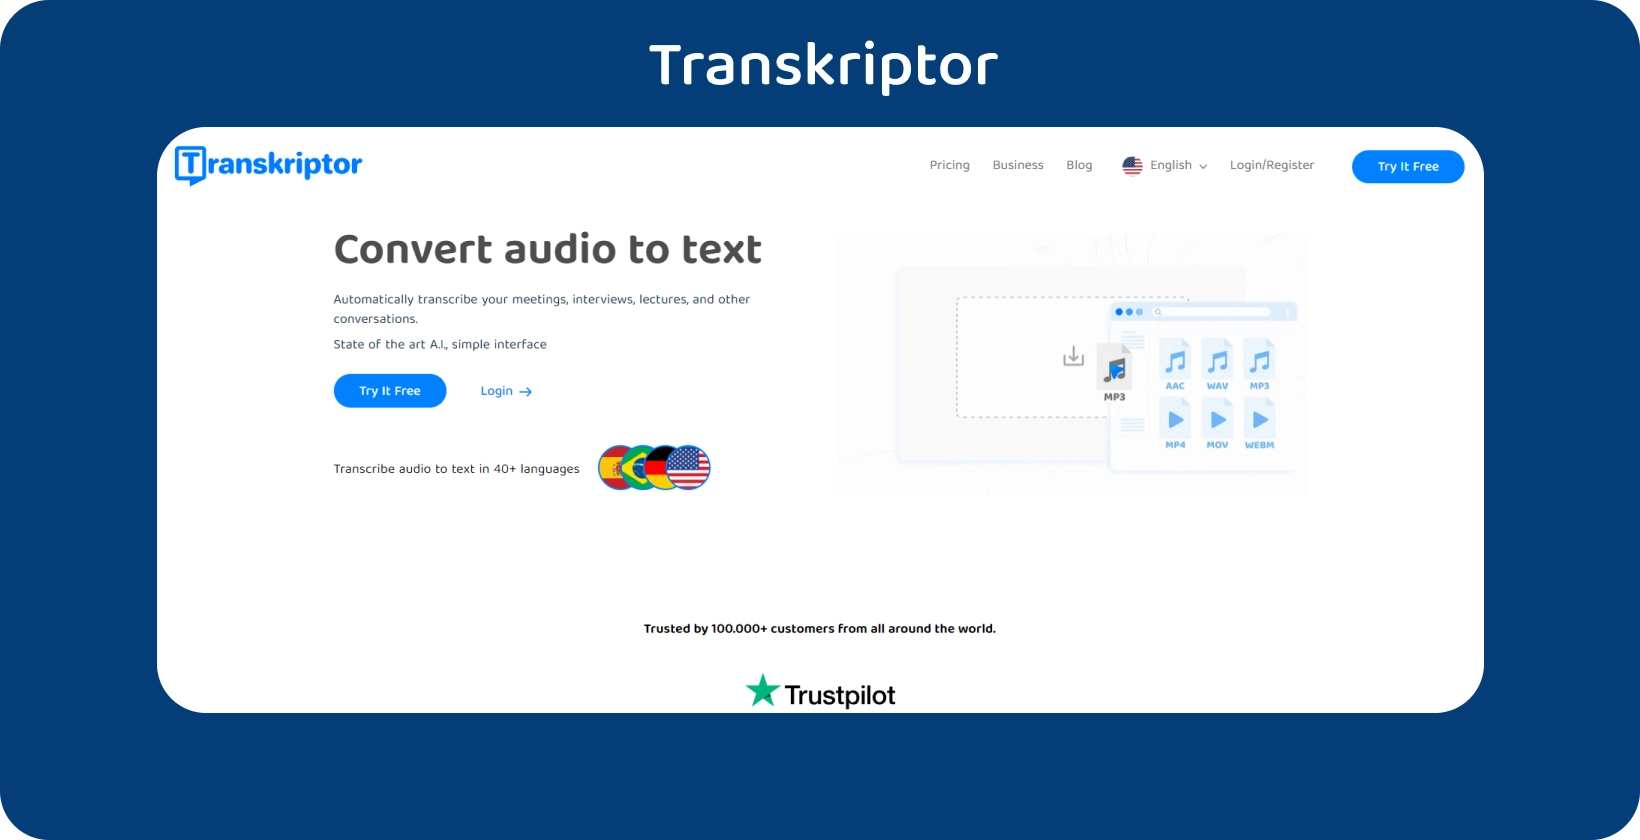 明確な行動喚起を備えたTranskriptorホームページで、音声からテキストへの文字起こしサービスを提供しています。